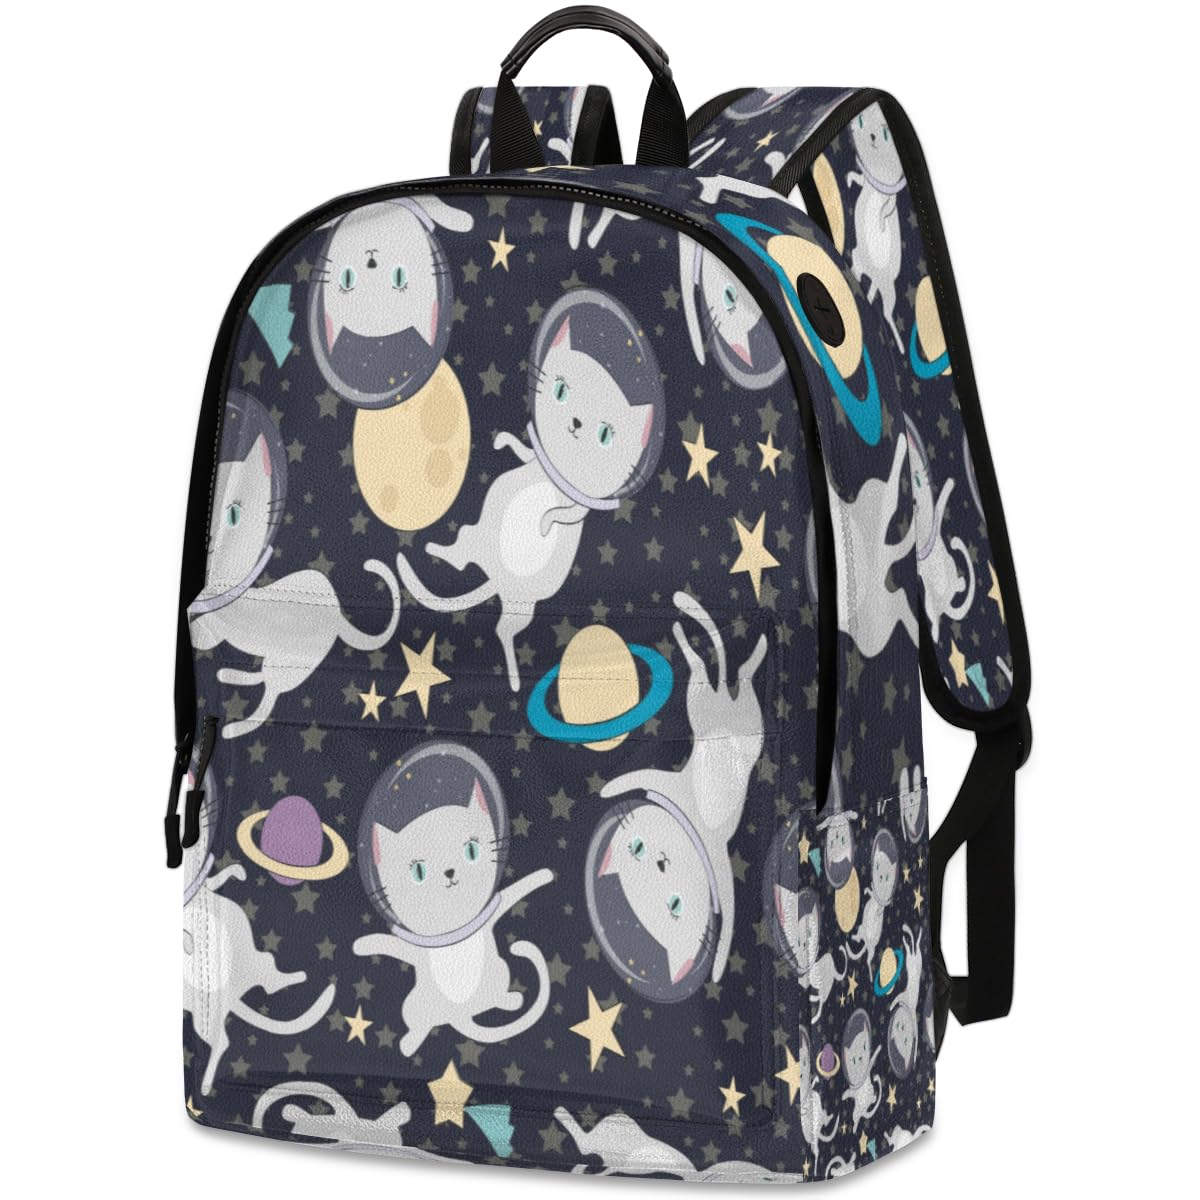 送料無料QsirBC Cartoon Universe Cat Astronaut Leather Backpack for Women Laptop Backpack Zipper Closure Adjustable Strap